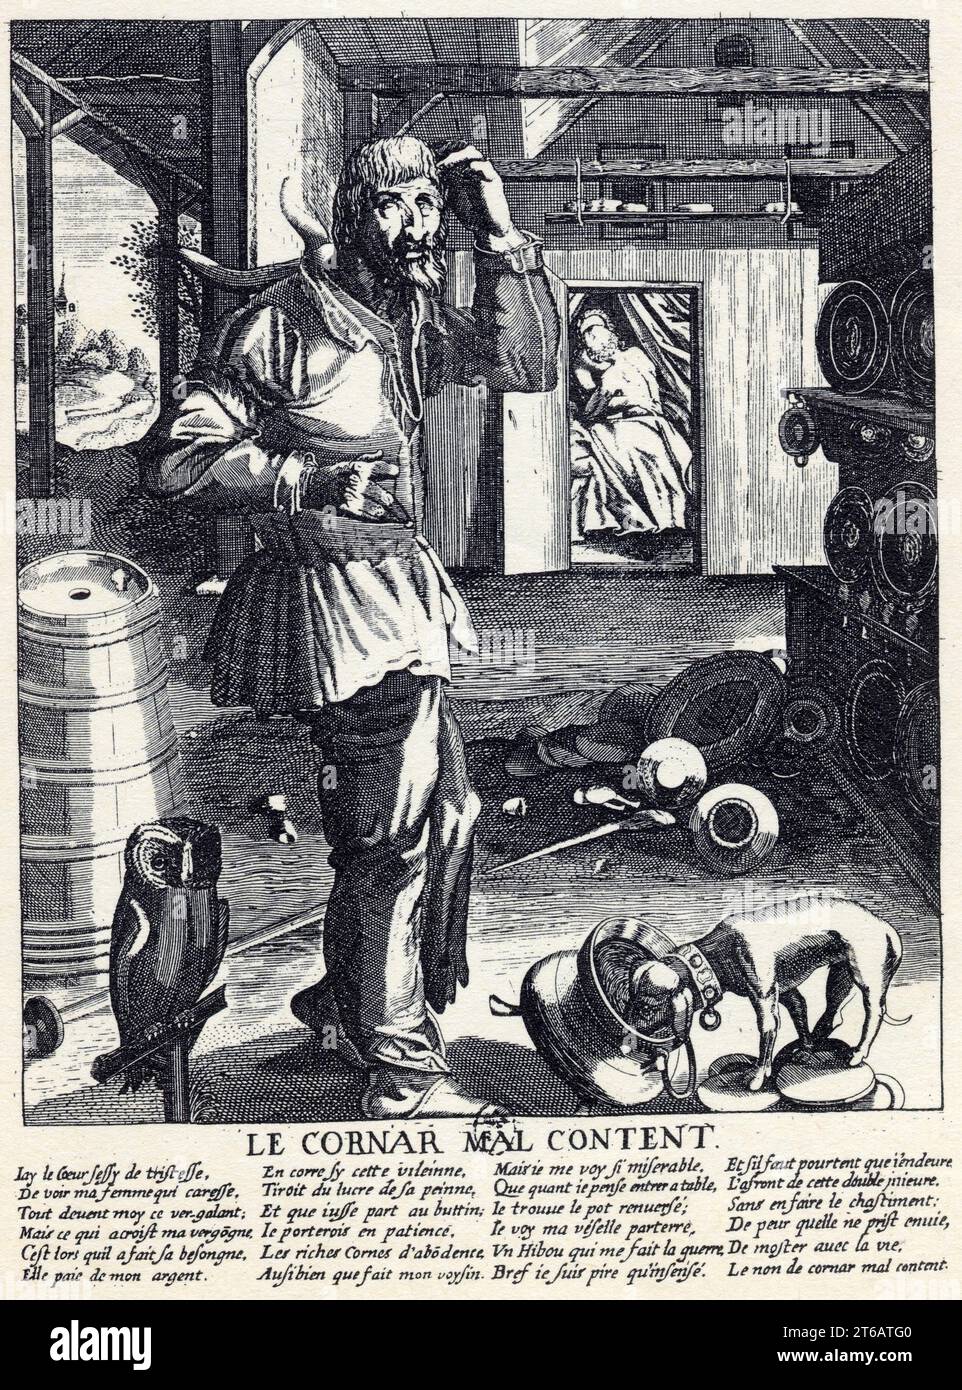 Malcontento le Cornard. Gravure du XVII ème siècle. Foto Stock